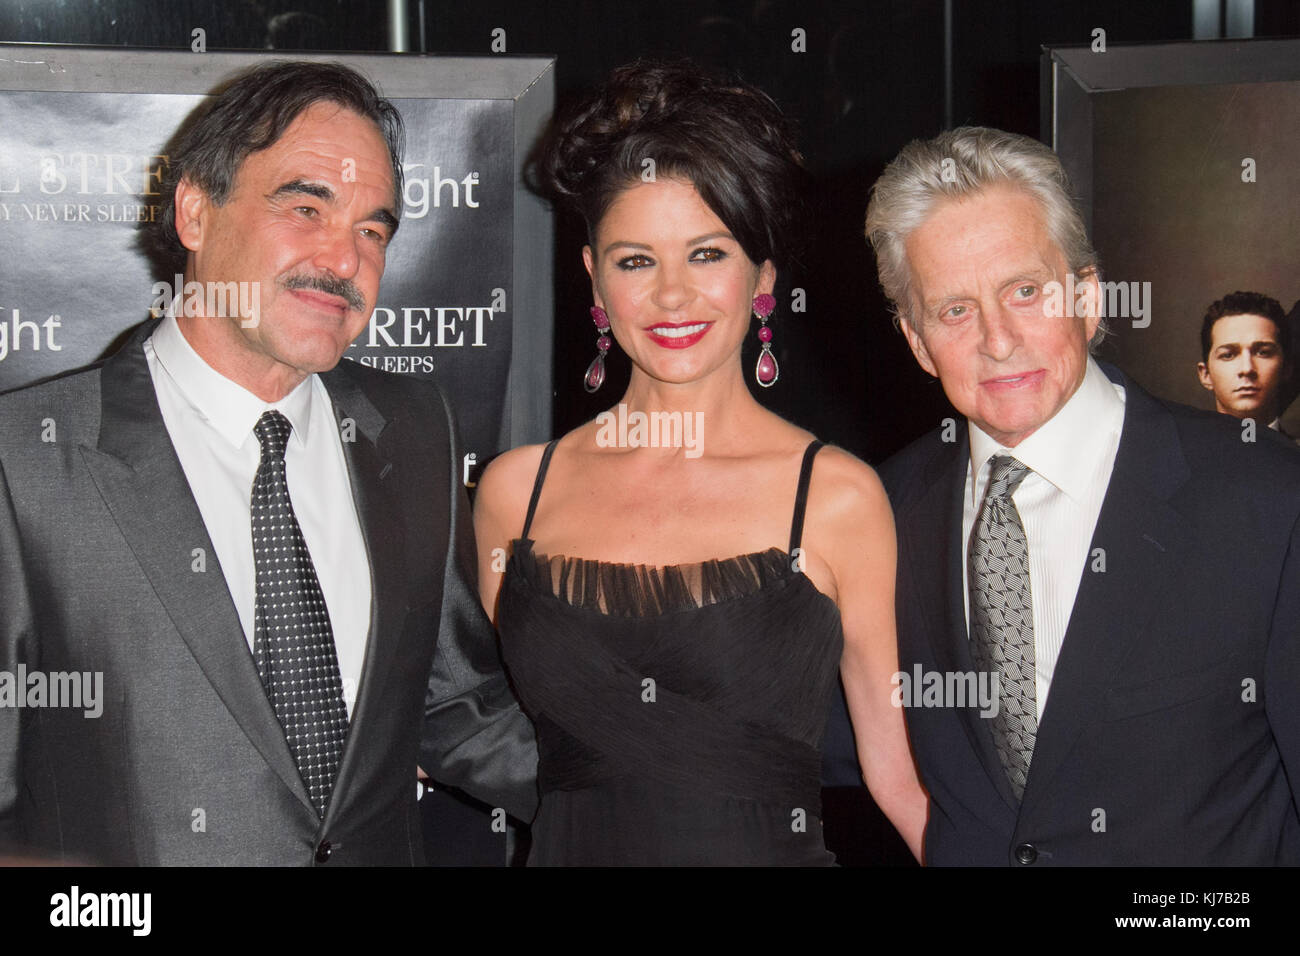 (L-R) le directeur Oliver Stone, Les Acteurs Catherine Zeta-Jones et Michael Douglas assistent à la première de "Wall Street: Argent Jamais cousue" au Ziegfeld. Banque D'Images